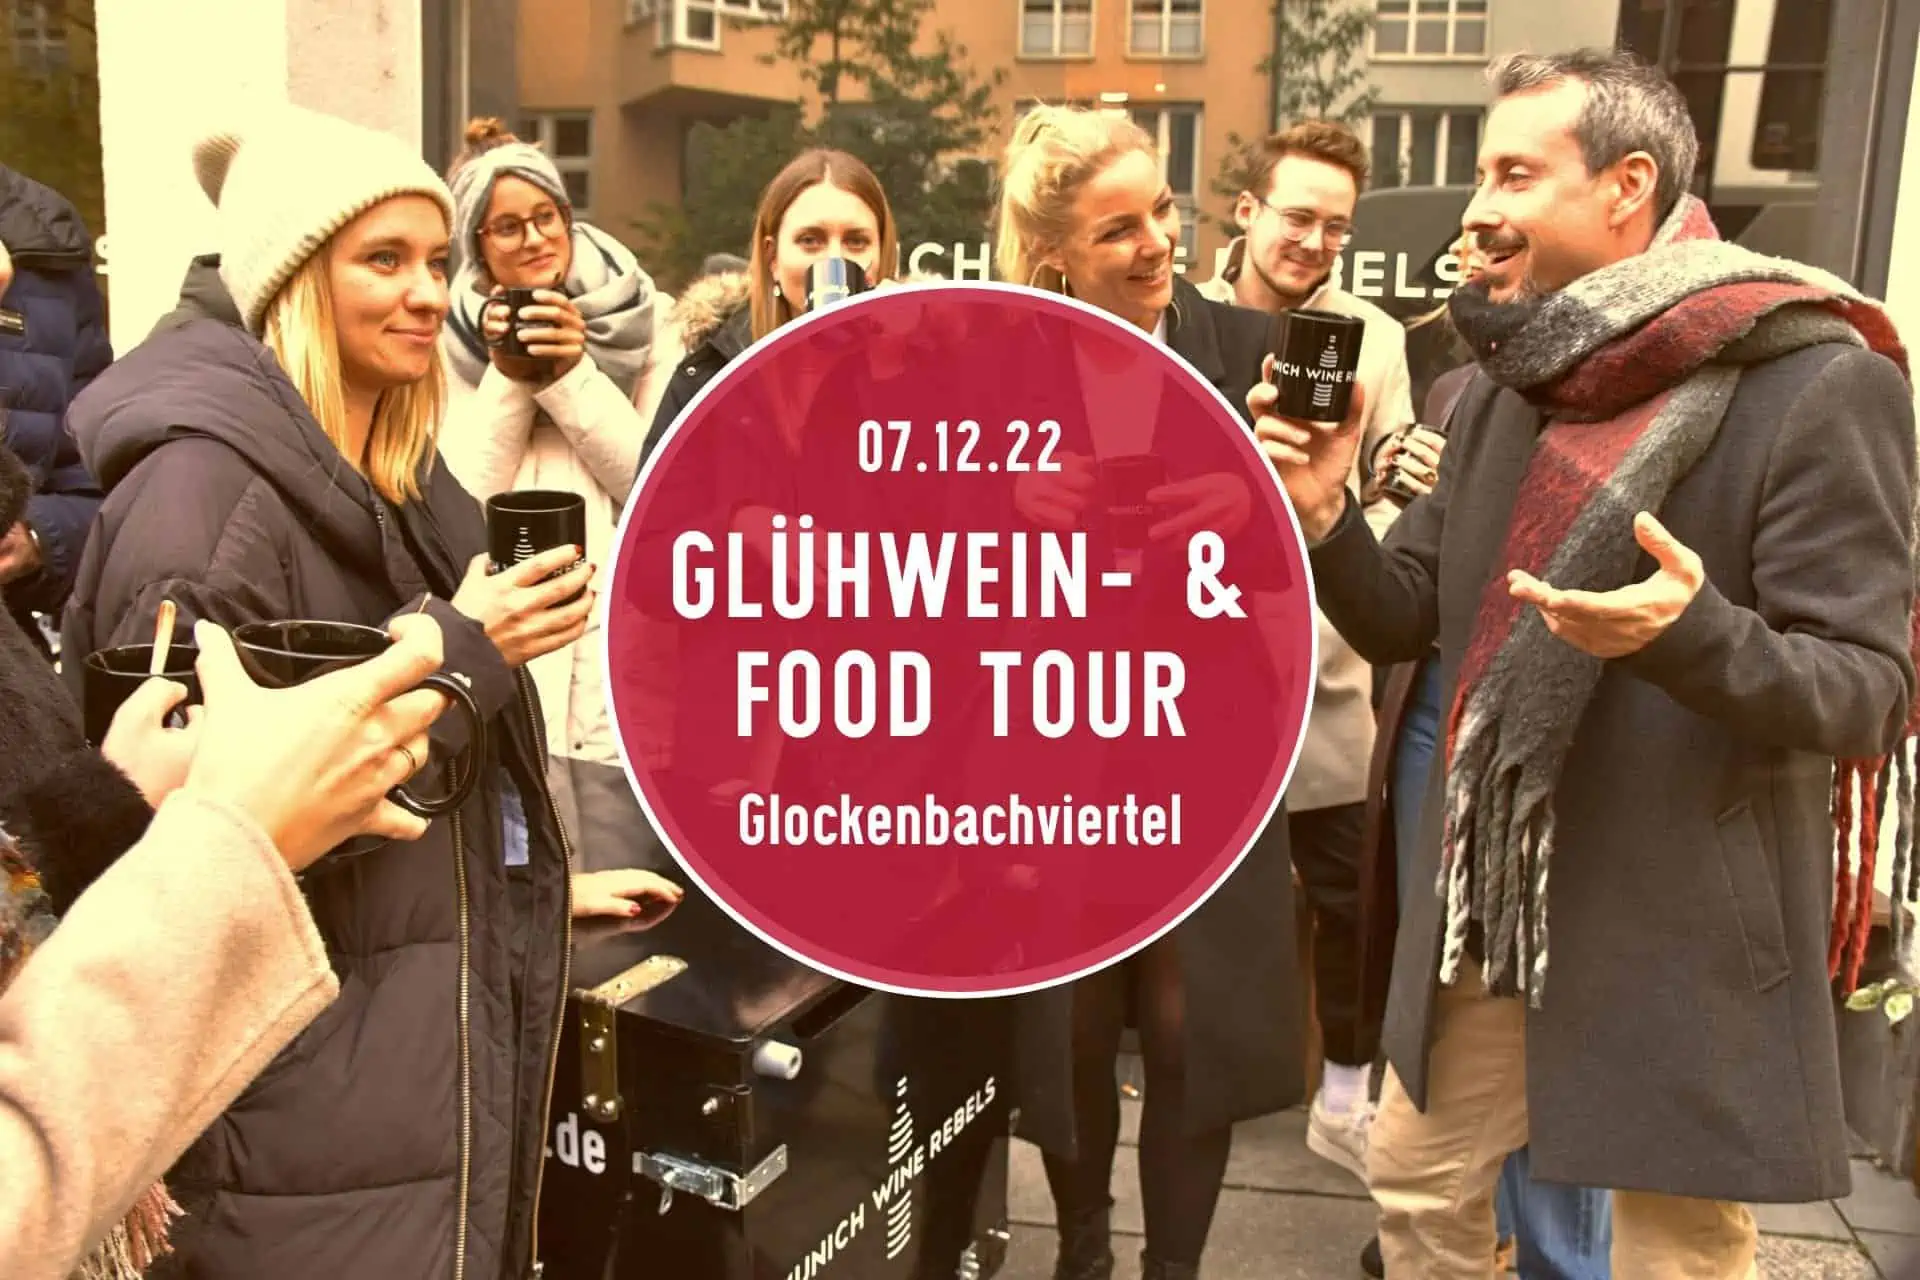 Glühweintour München 07.12.22